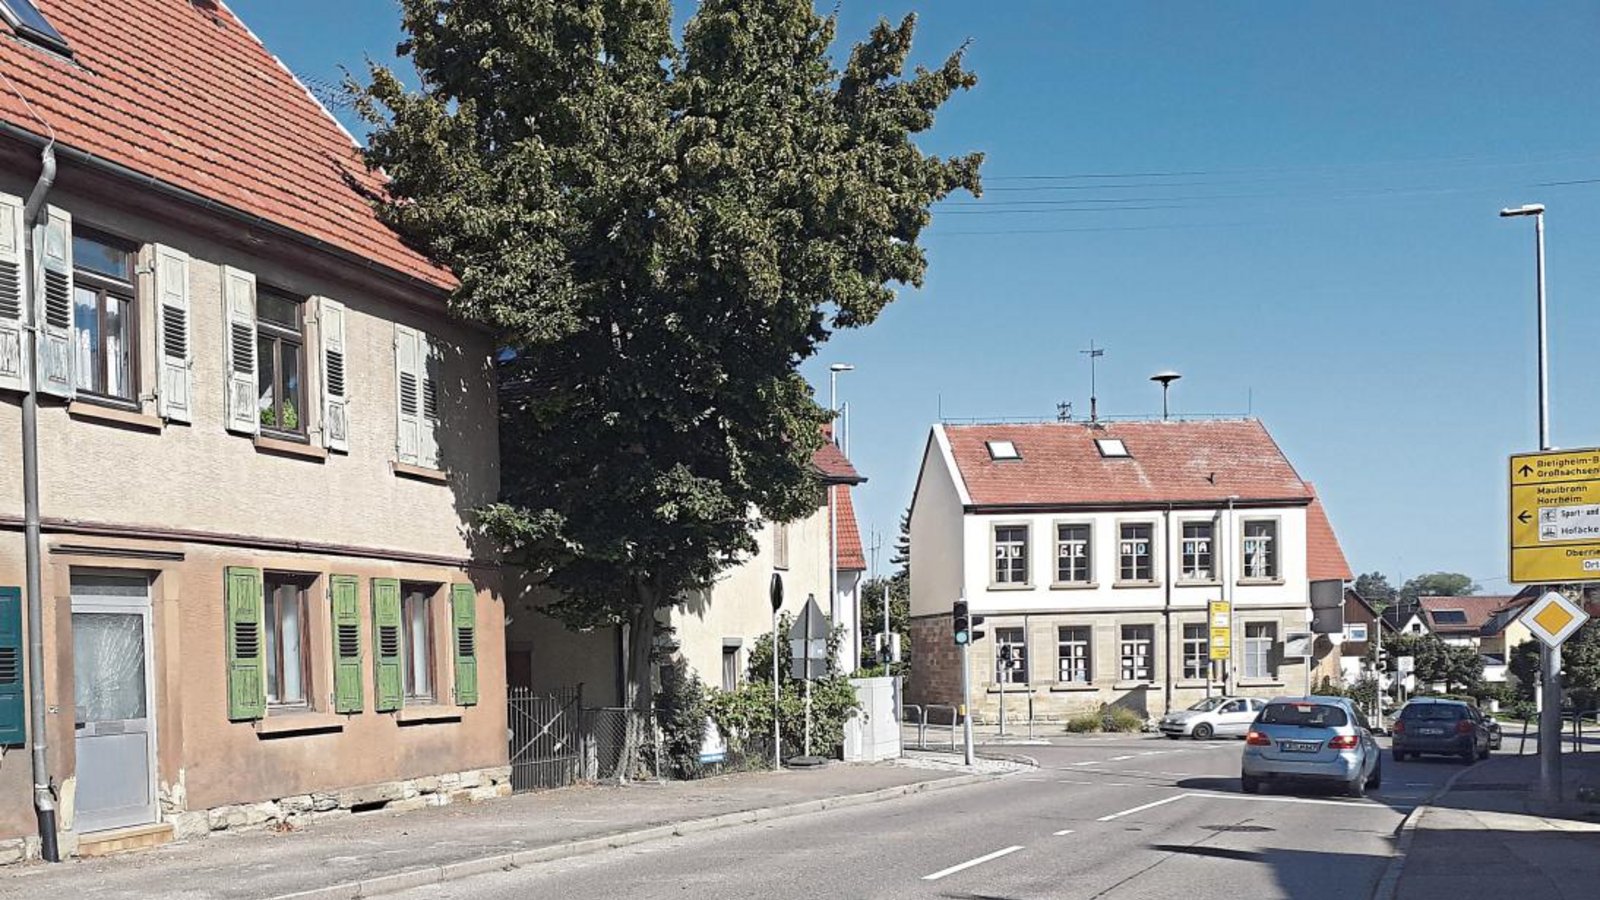 Die Kreuzung der Vaihinger mit der Horrheimer und der Sedanstraße in Sersheim soll künftig ihr Gesicht verändern. Geplant sind ein Kreisverkehr und Mehrfamilienhäuser.  Foto: Glemser